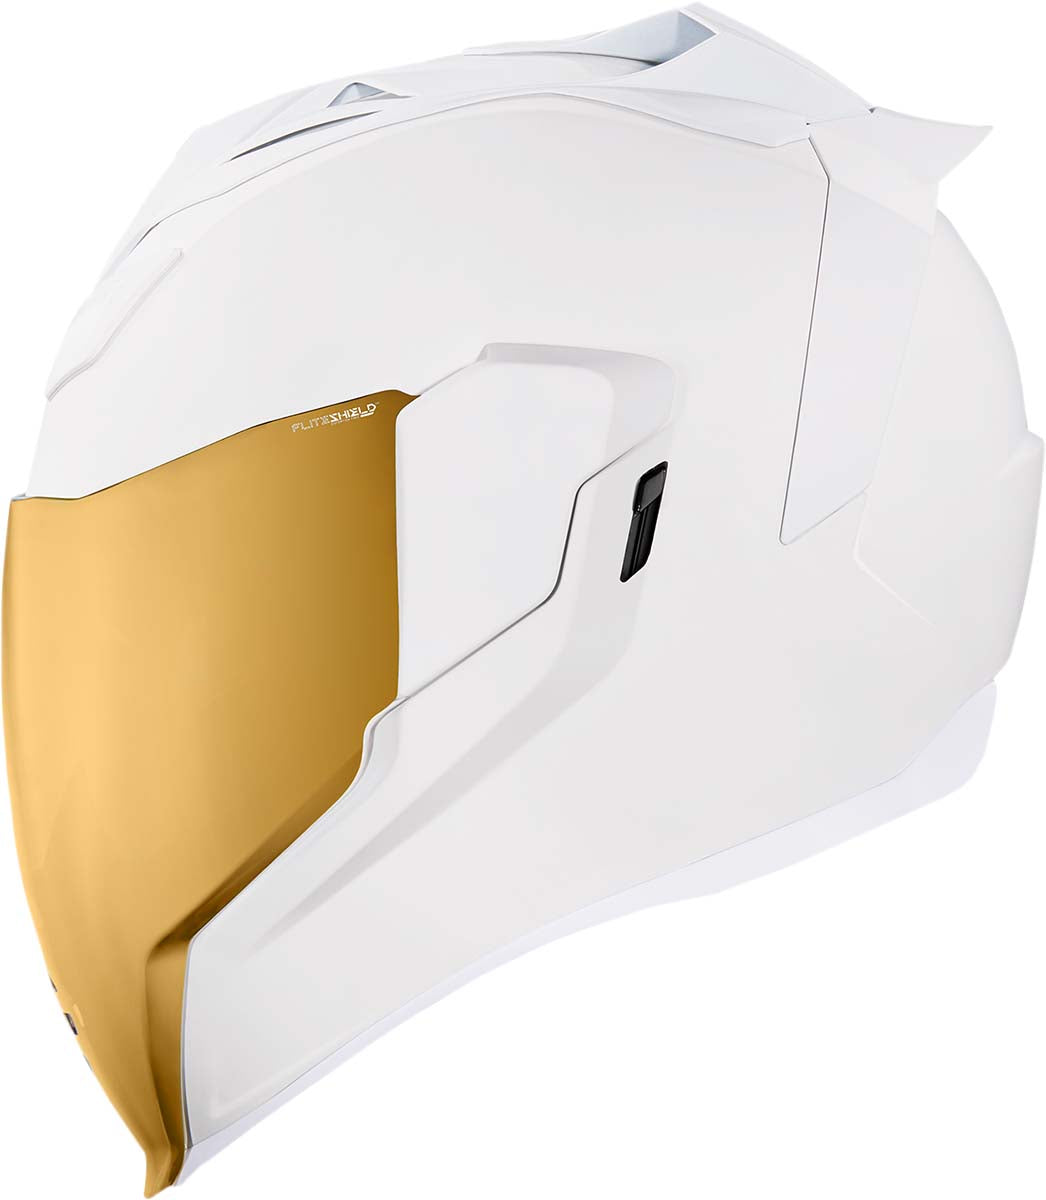 ICON Airflite™ Helmet - Peacekeeper - Rubatone White